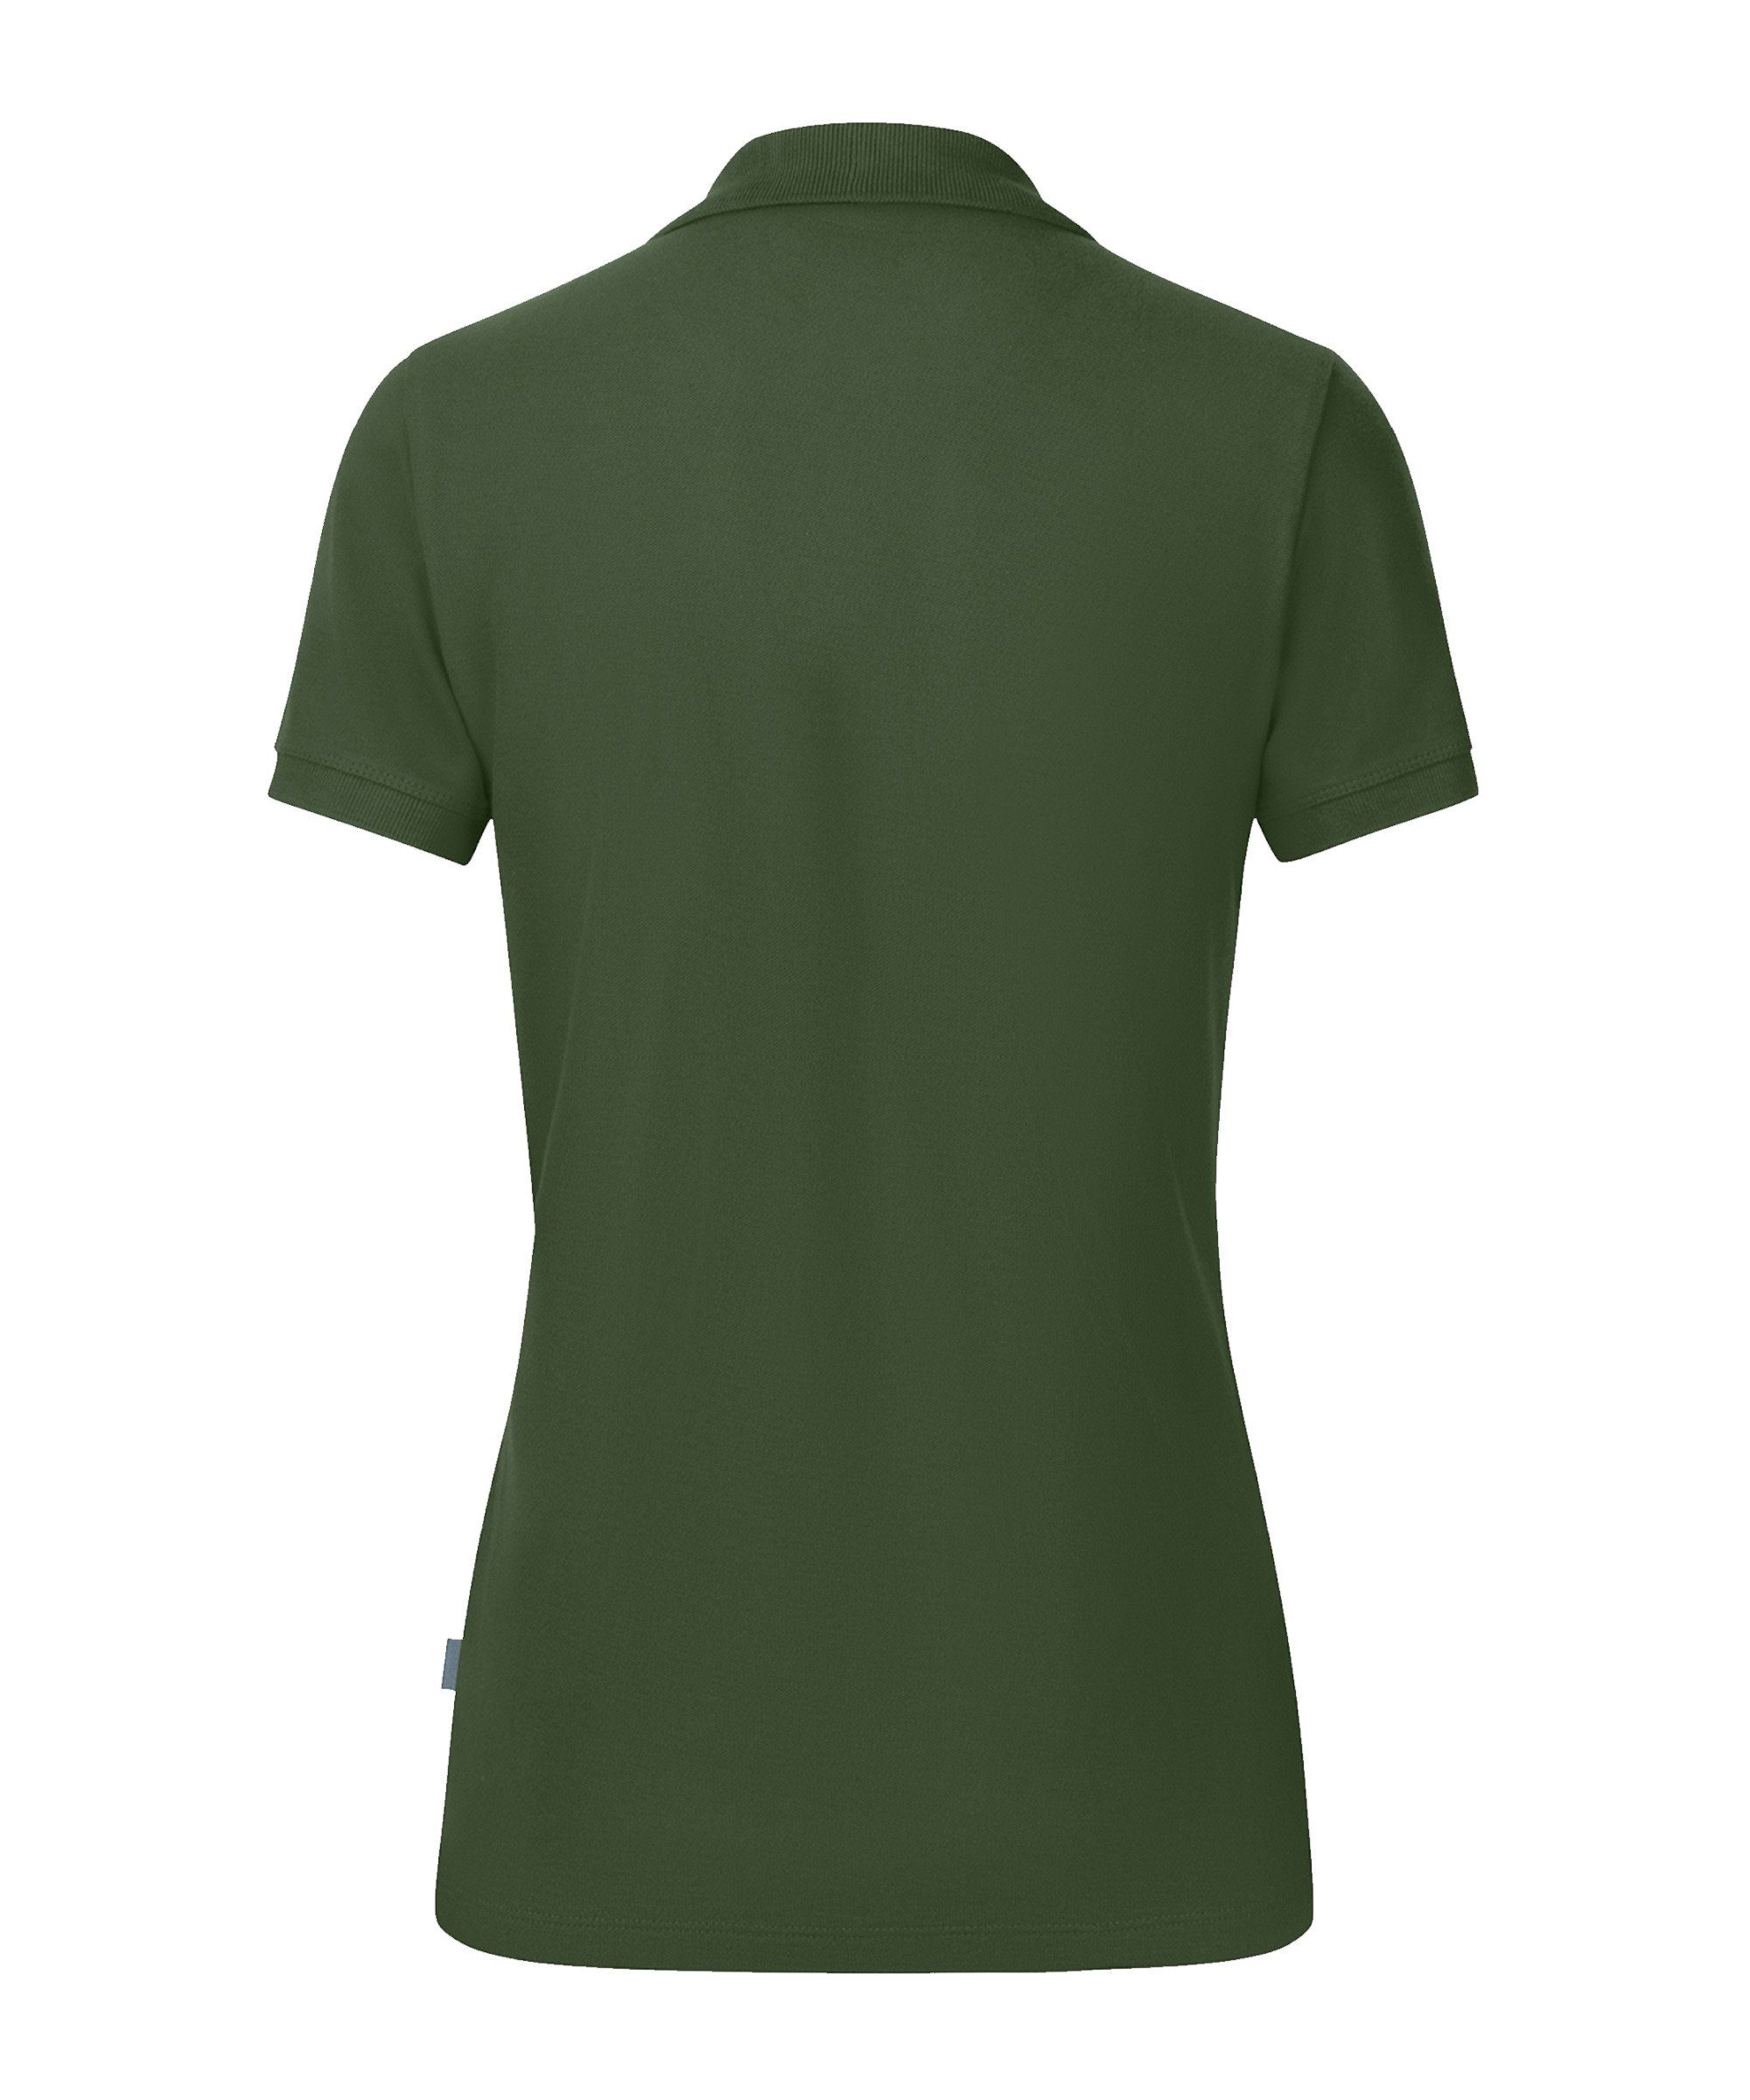 gruen Jako Nachhaltiges Produkt Poloshirt Organic Damen Poloshirt